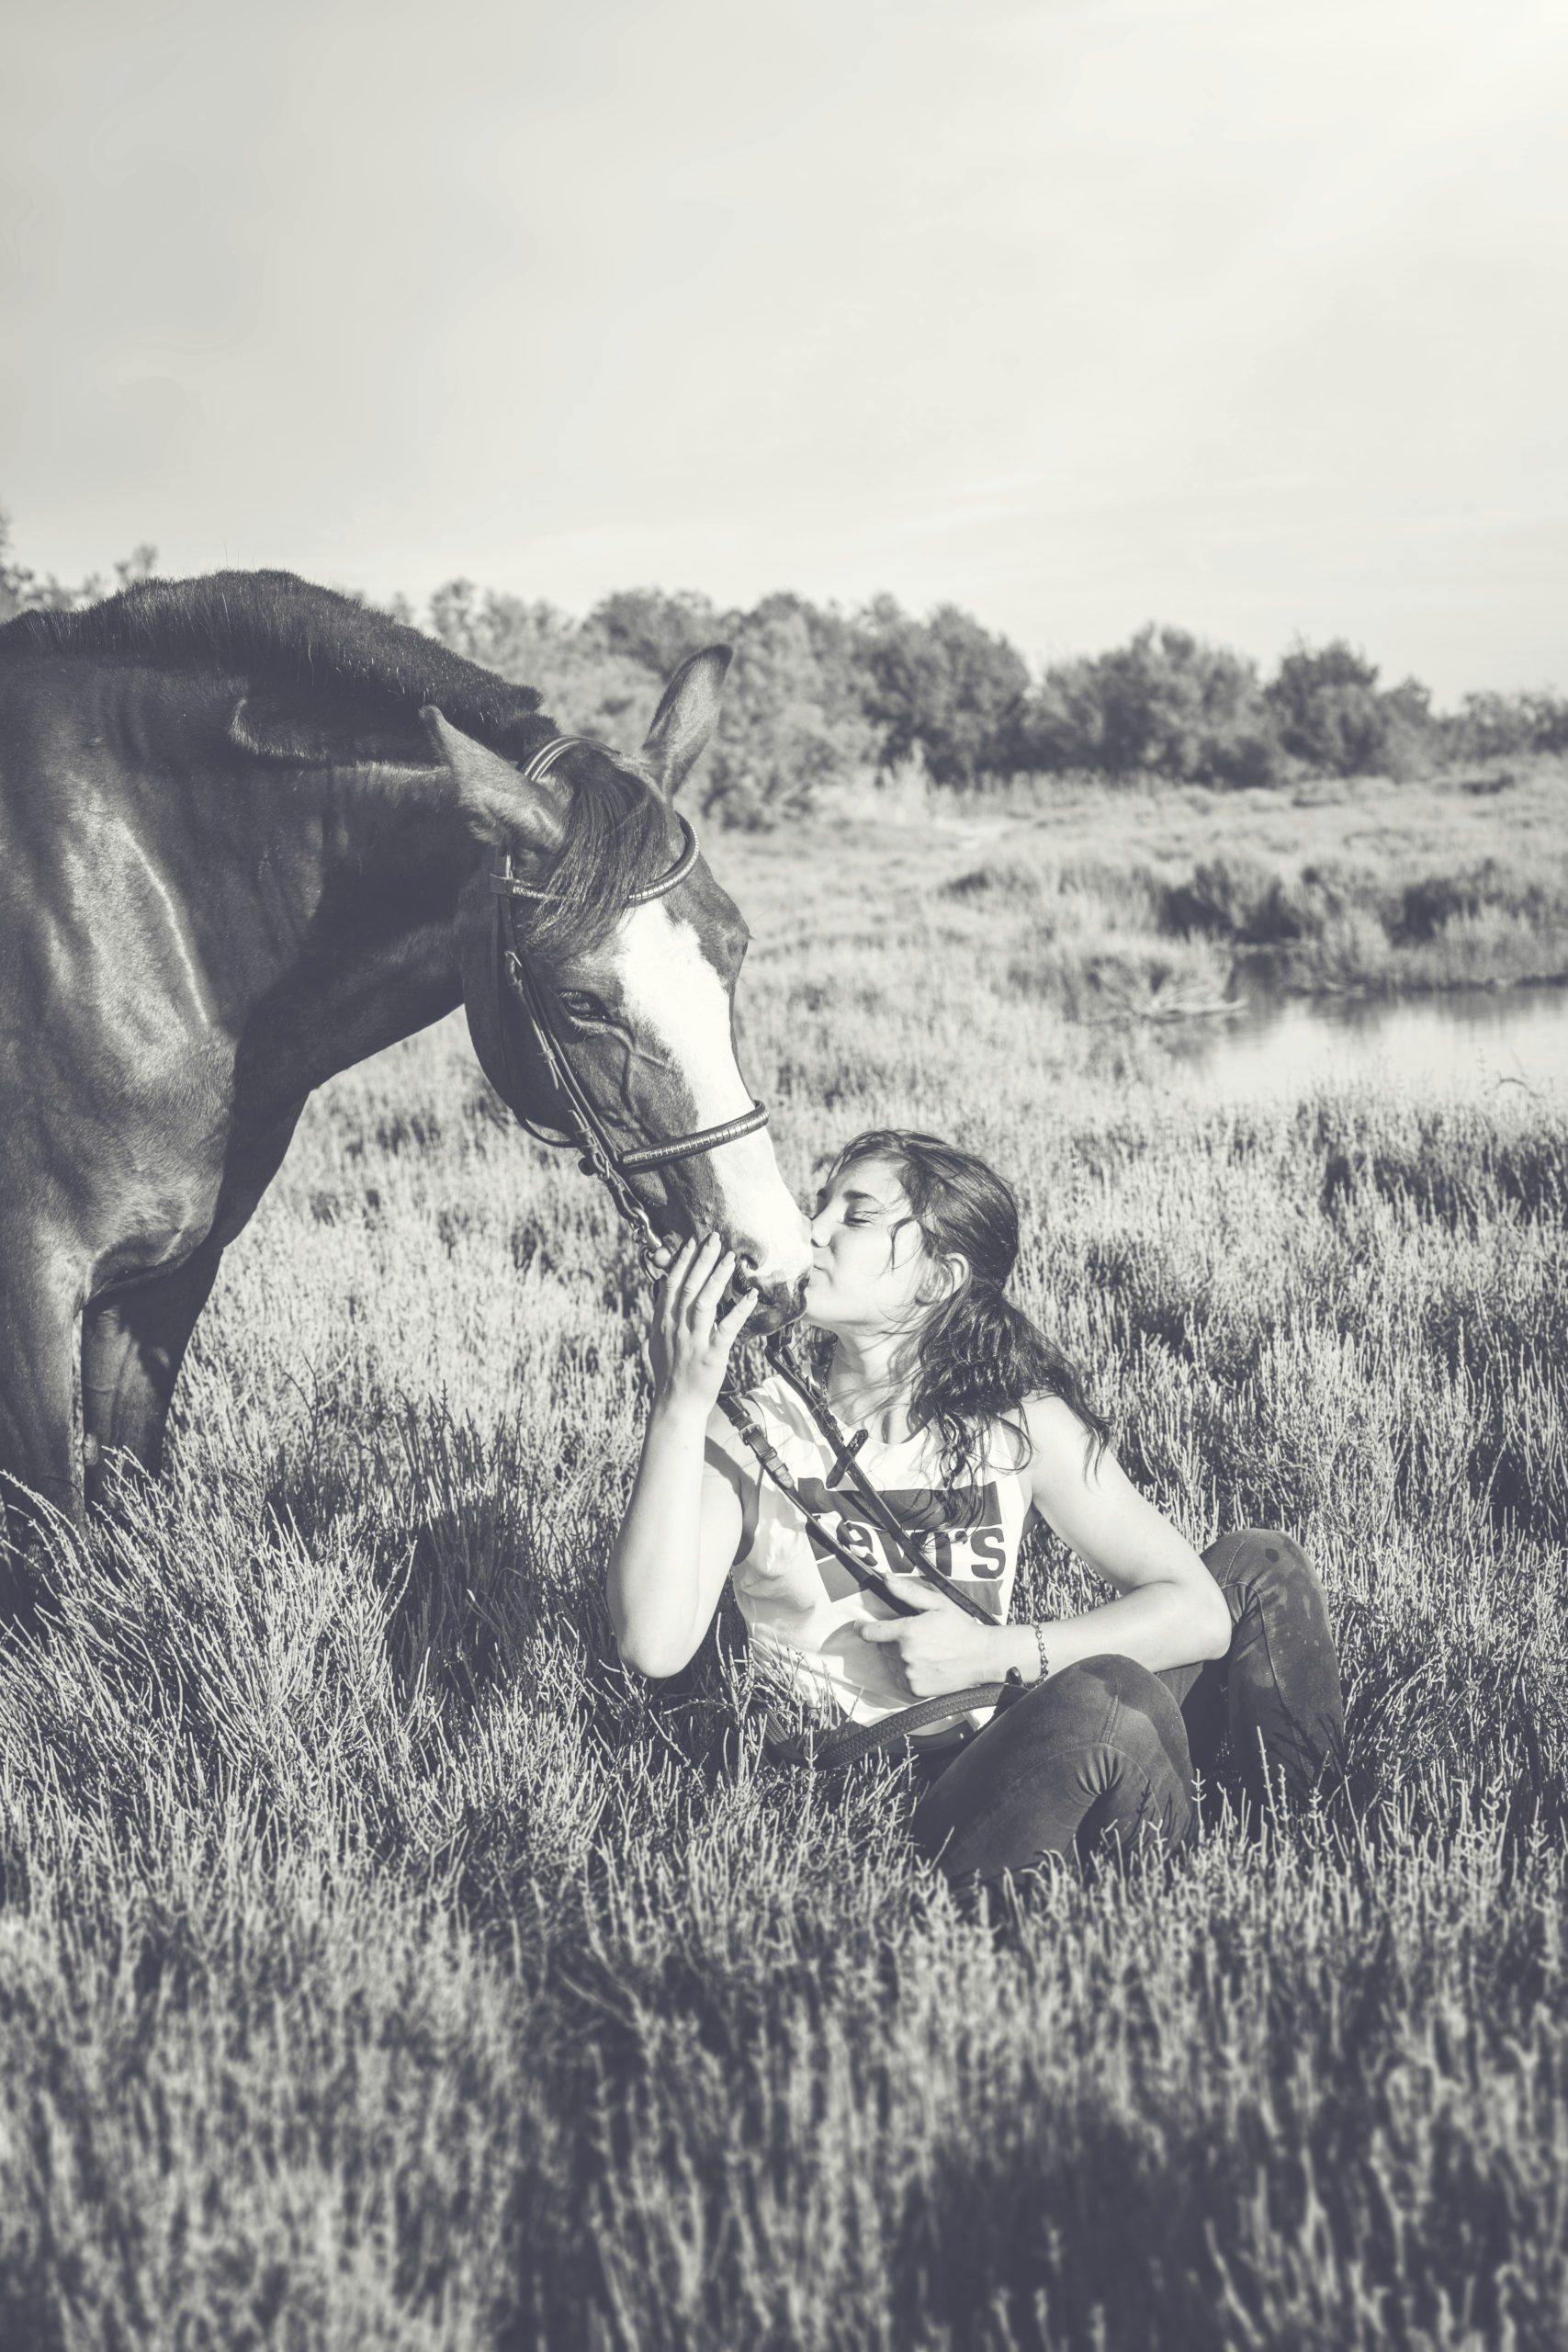 Photographe animaux de compagnie, cheval et sa cavalière